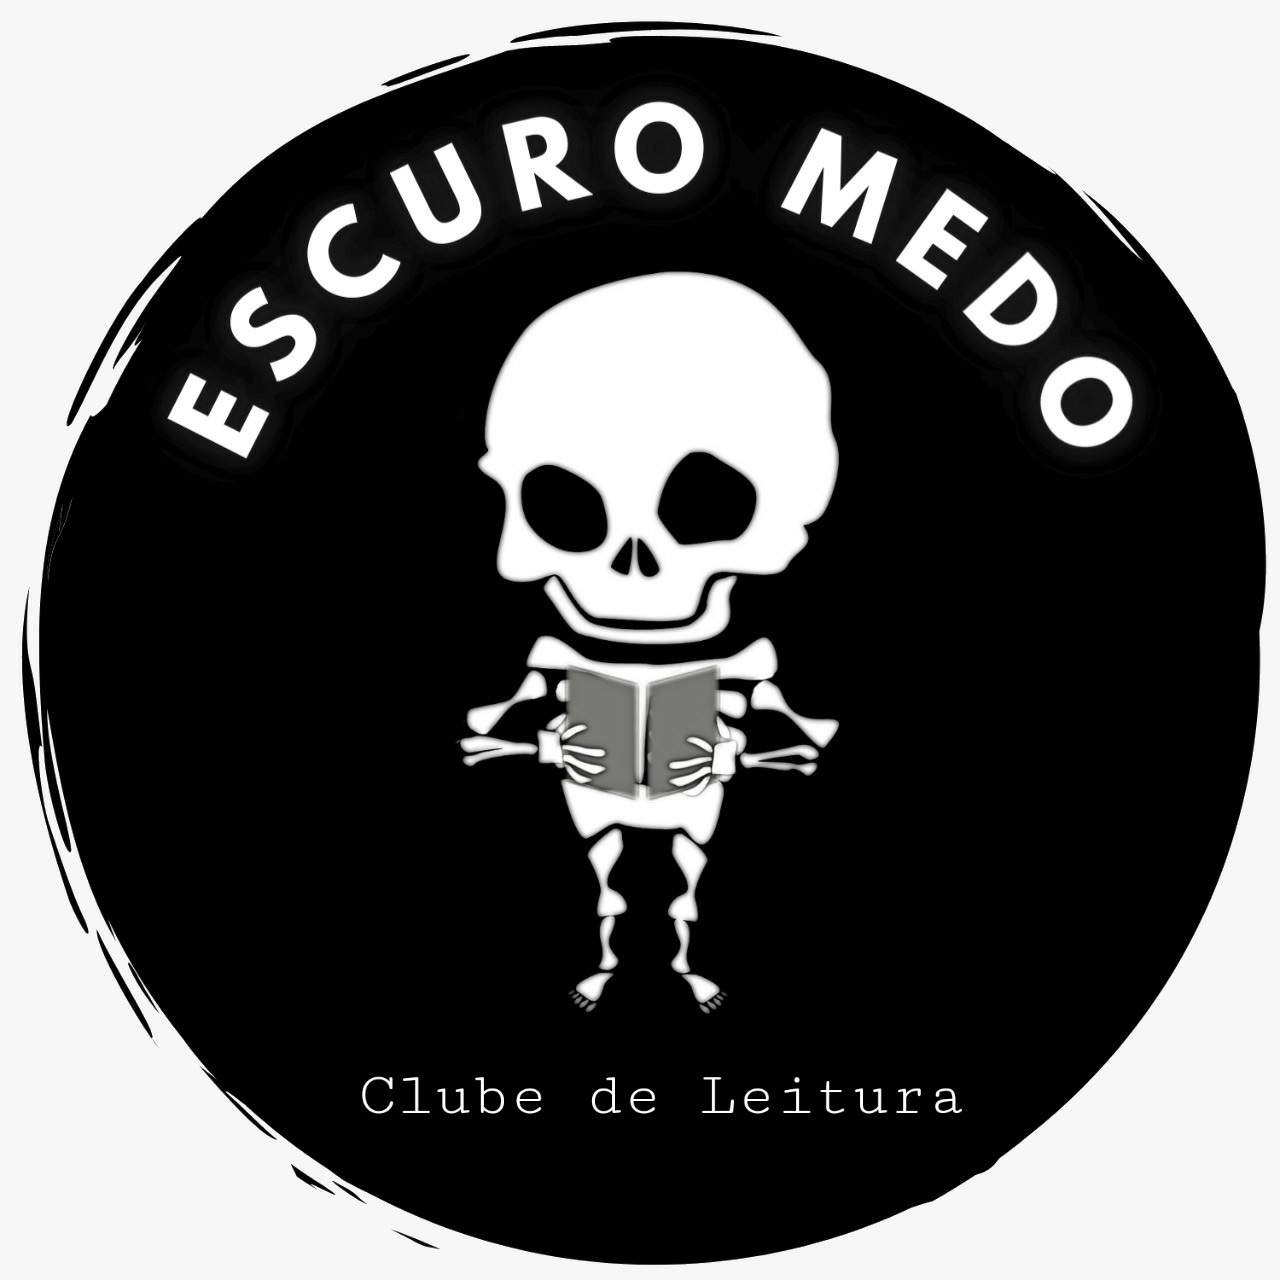 Artwork for Clube de Leitura Escuro Medo